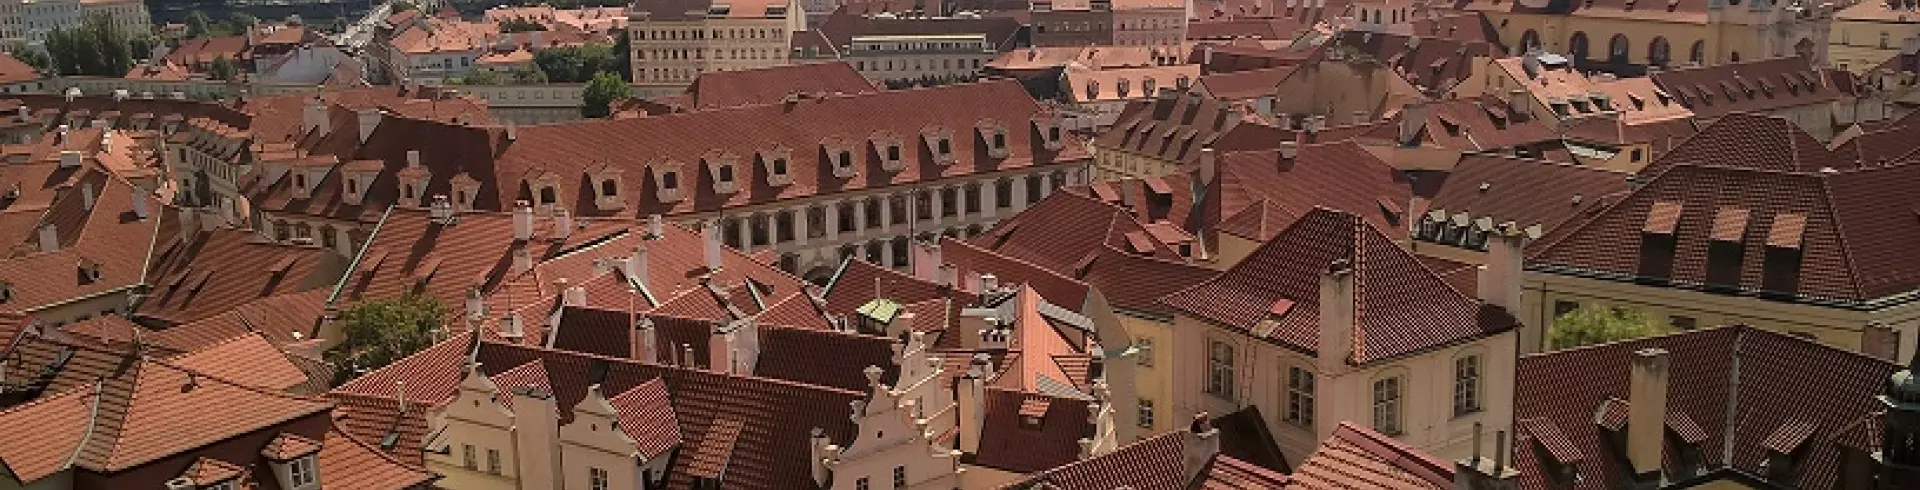 Wrocław, Praga, Góry Sowie